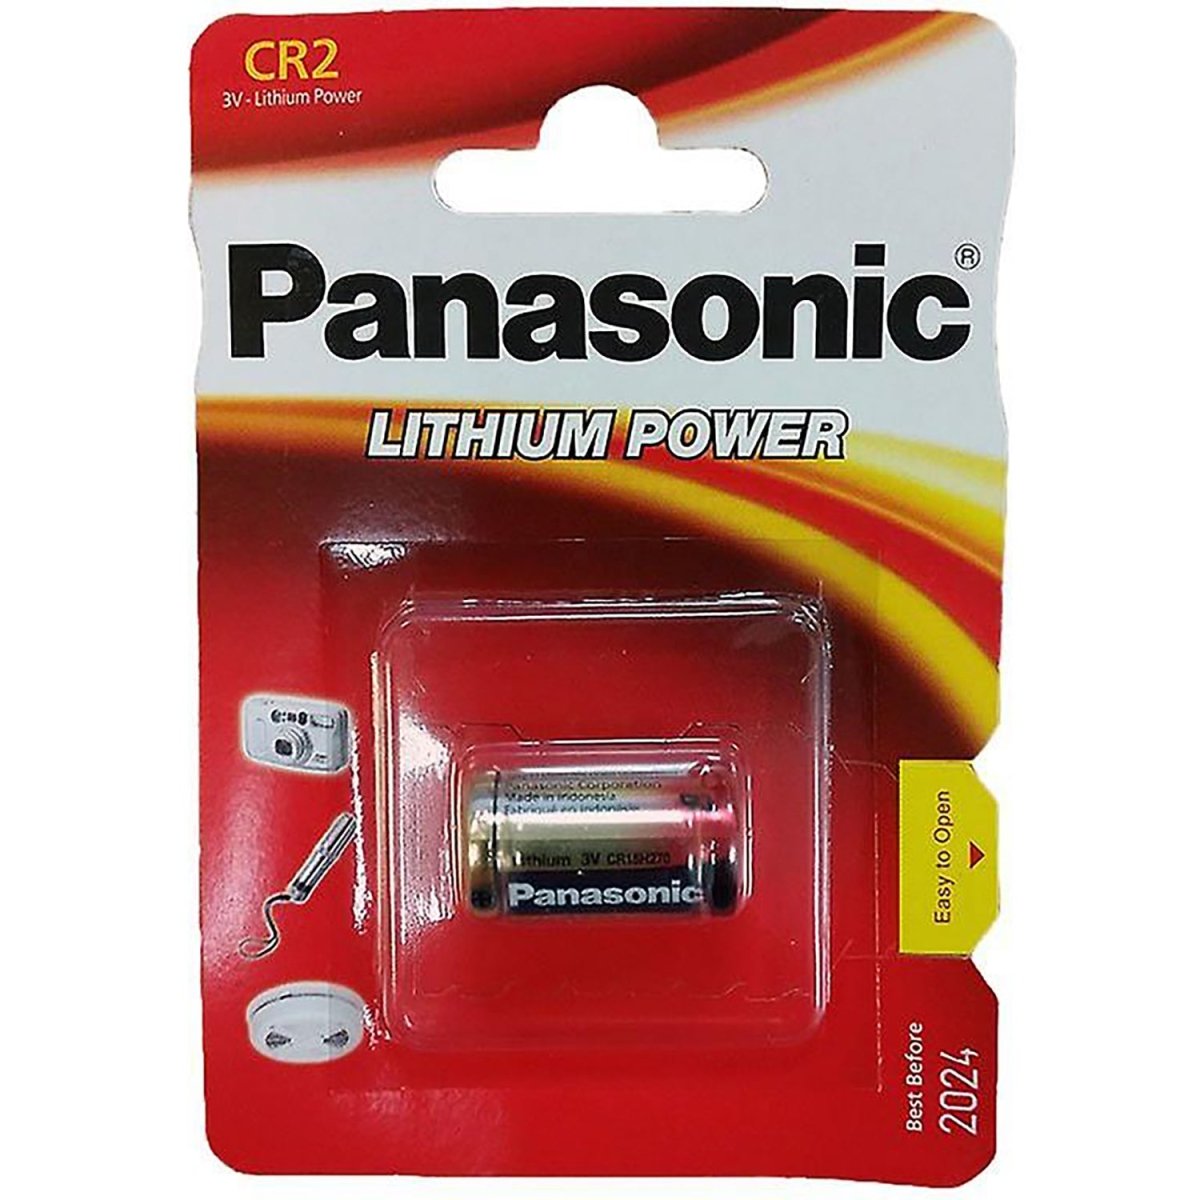 1x Panasonic CR2 LITHIUM POWER Pila litio / DL CR2, KCR2, CR17355 - 3V